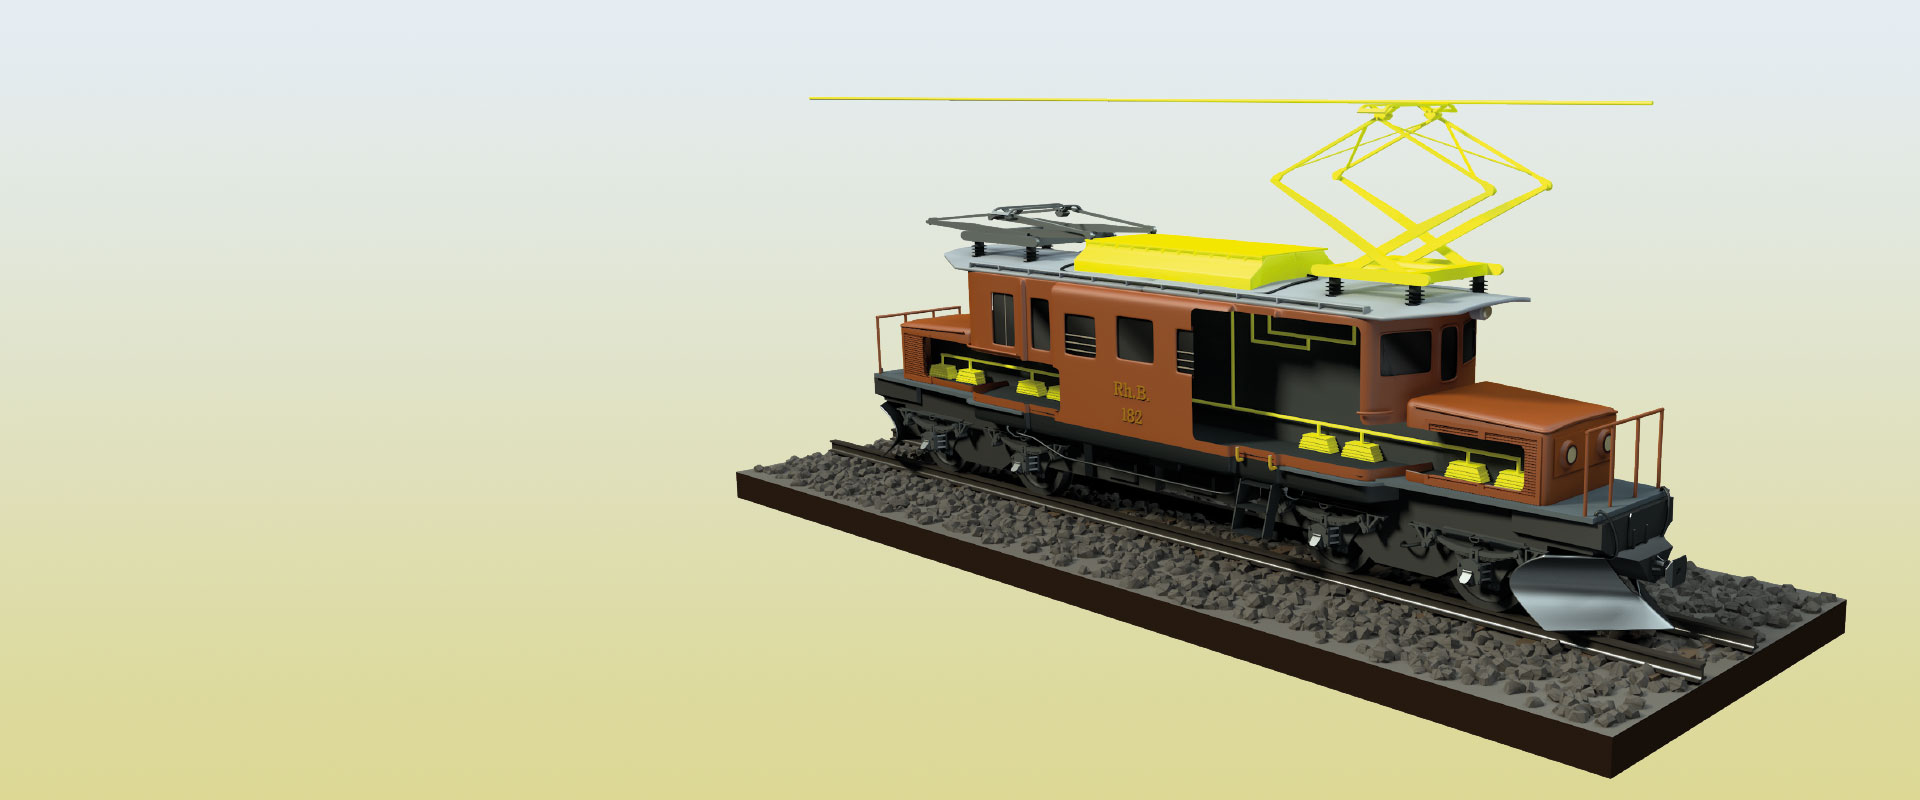 Visualisierung einer alten Lokomotive